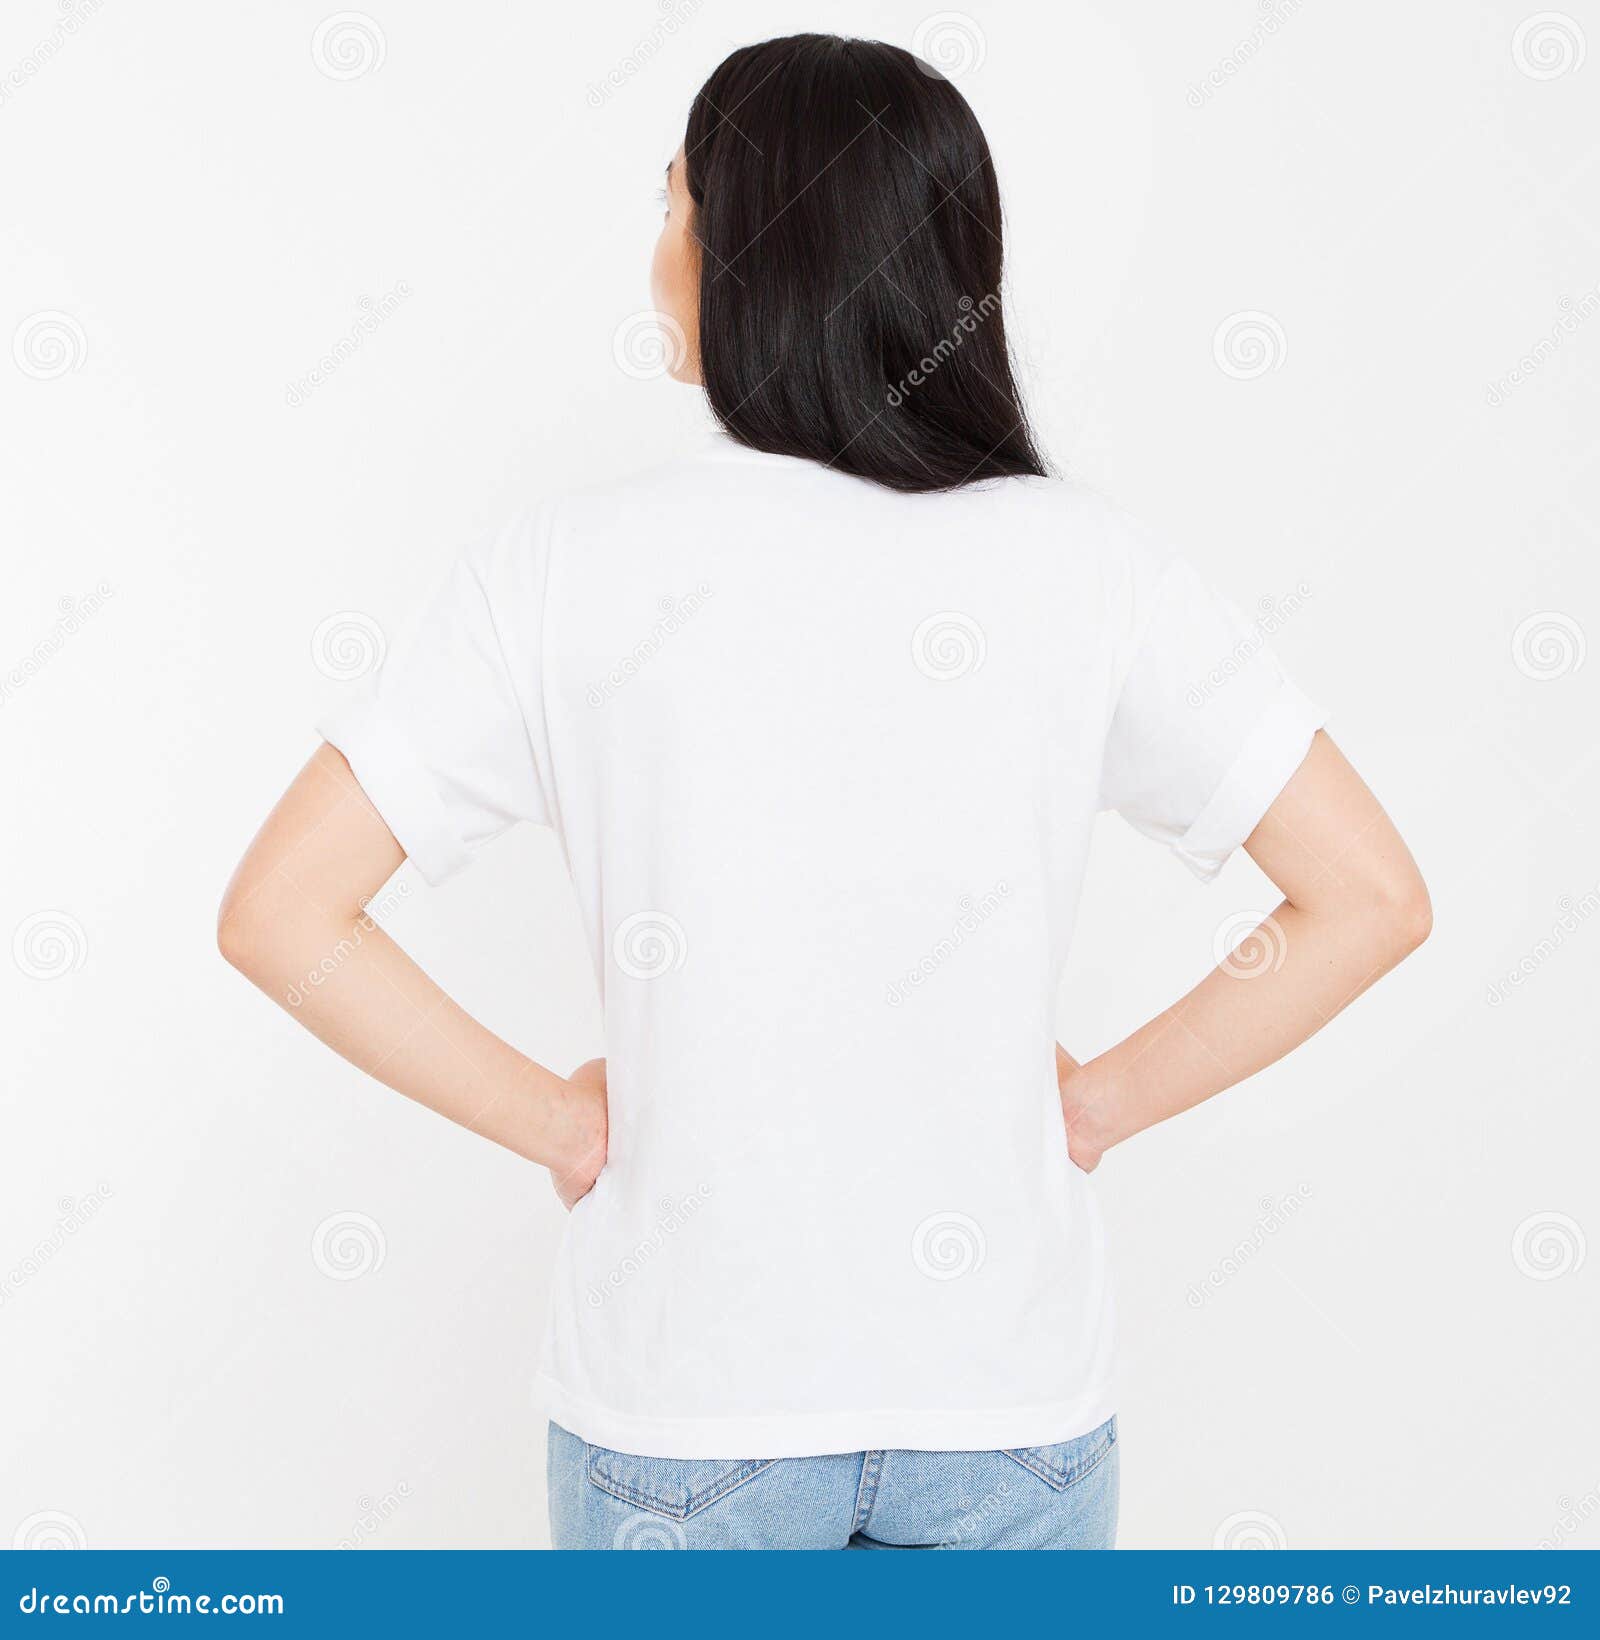 Coreano Joven De La Visión Mujer Morena Asiática En Camiseta Blanca En Blanco, Diseño De La Camiseta Y Concepto De La Ge Foto de archivo - Imagen de ocasional, limpio: